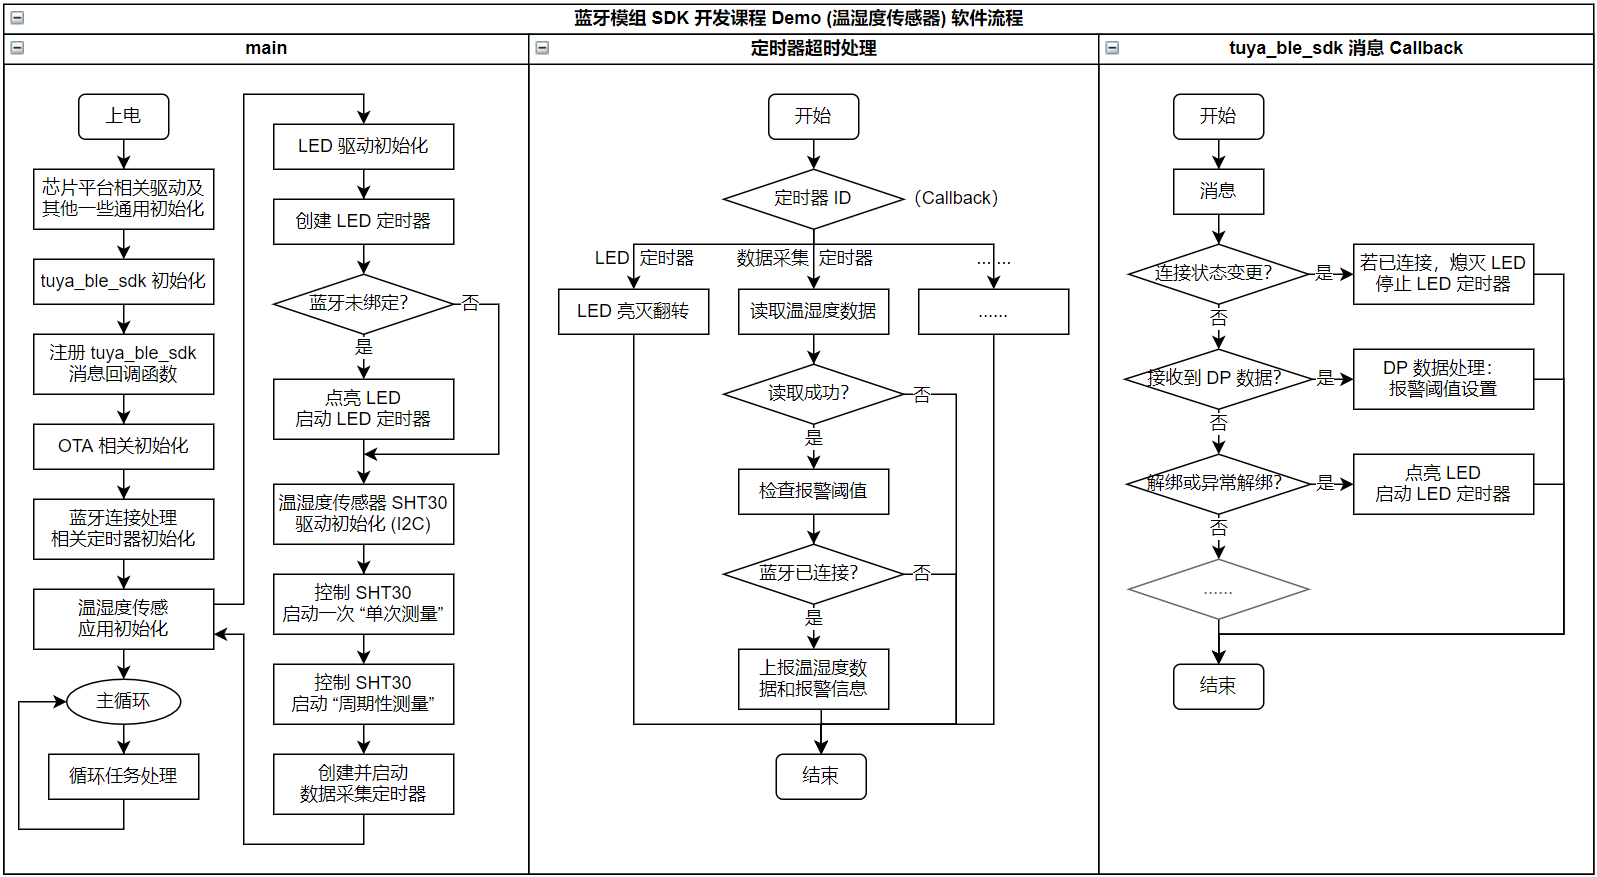 software-flow-chart